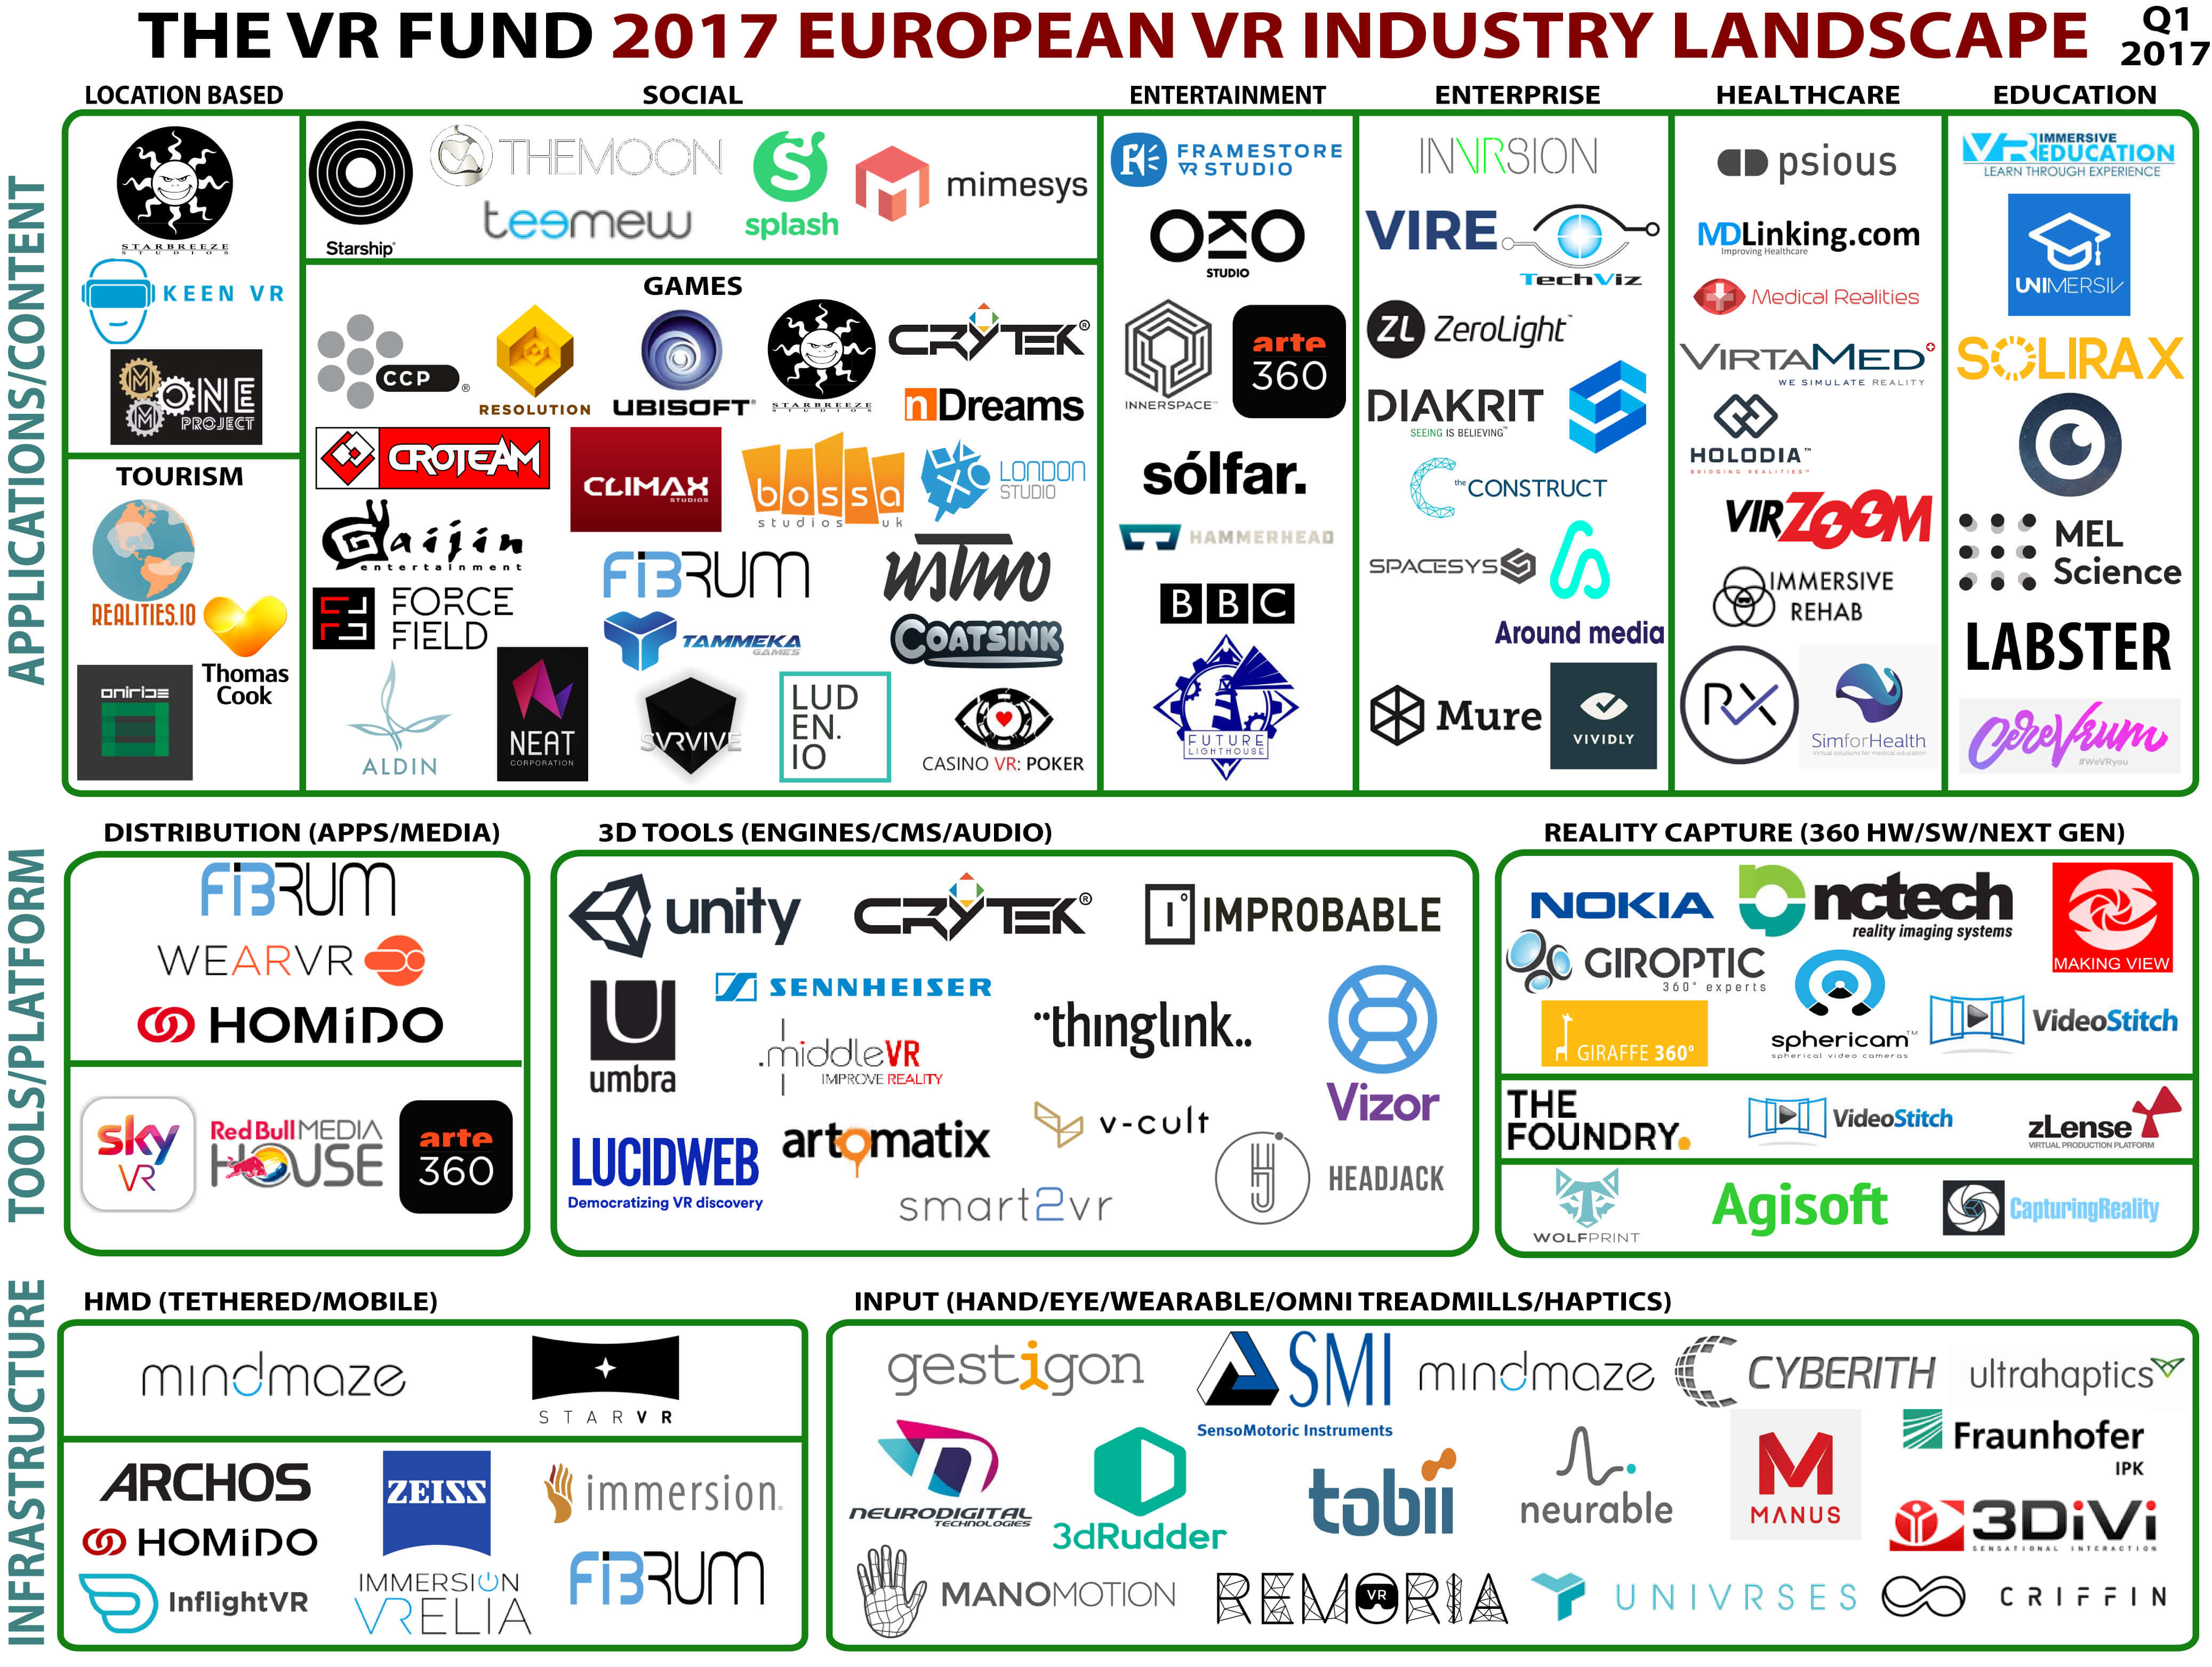 VR Landscape Europe